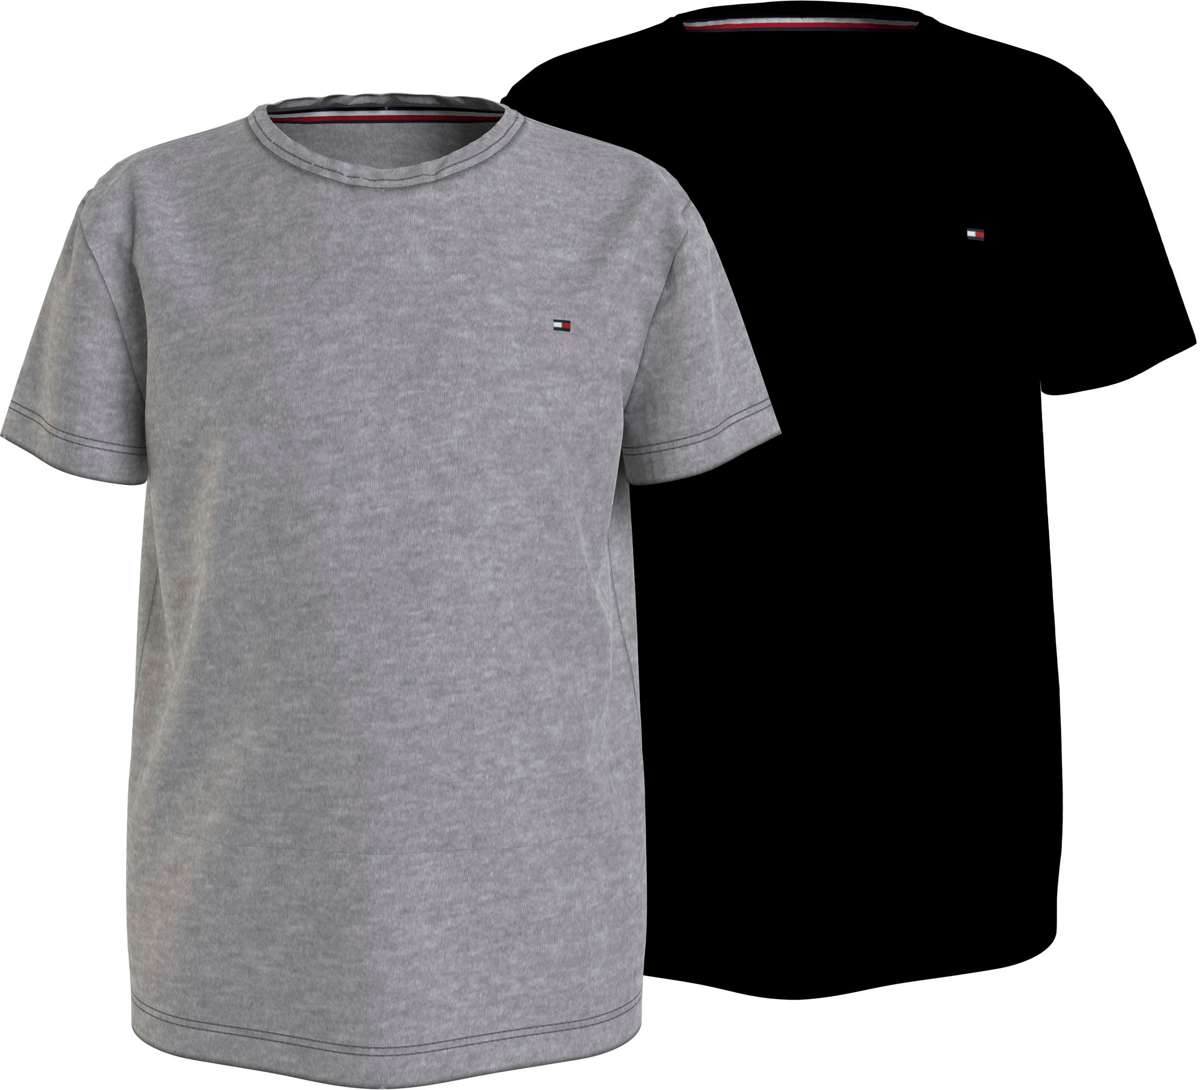 Рубашка с коротким рукавом (2 шт. в упаковке) с фирменным лейблом Tommy Hilfiger